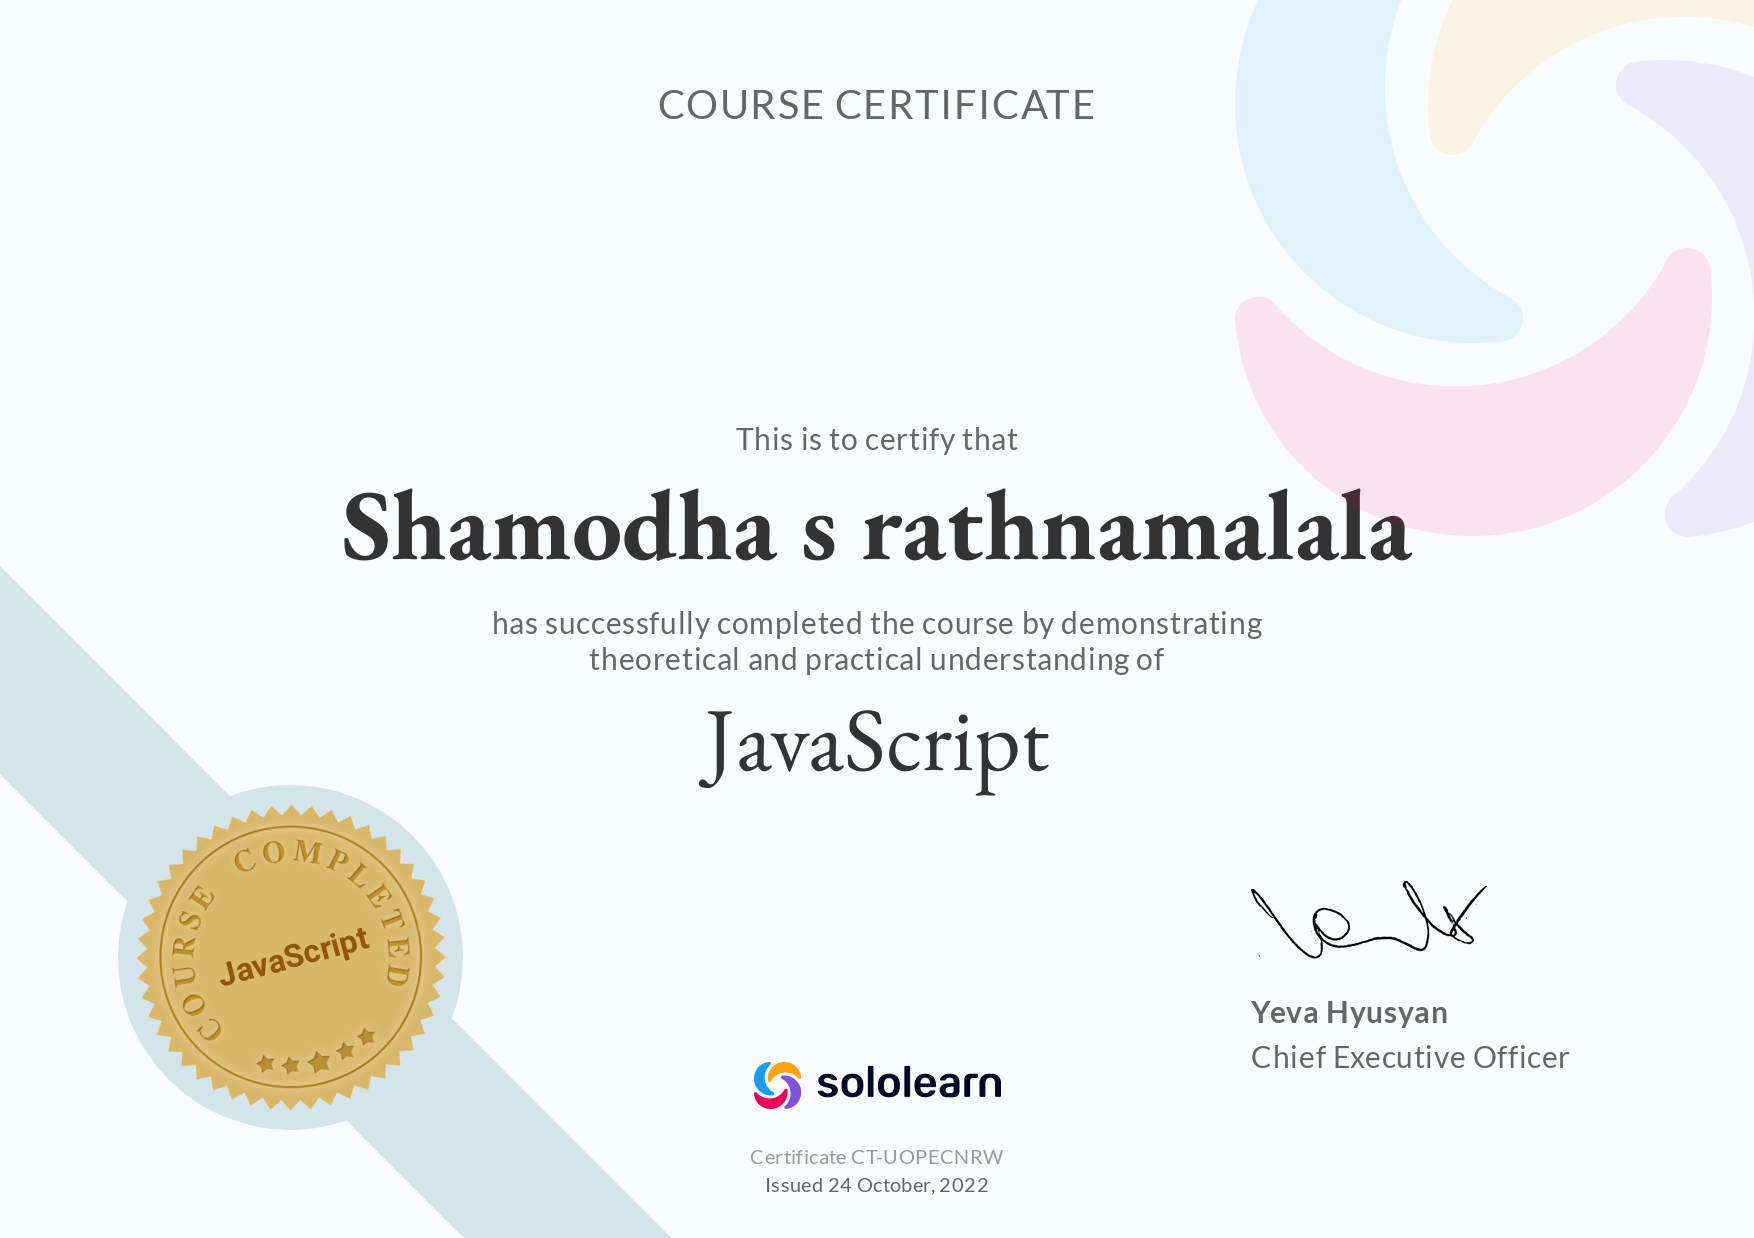 javaScript solo learn certificate